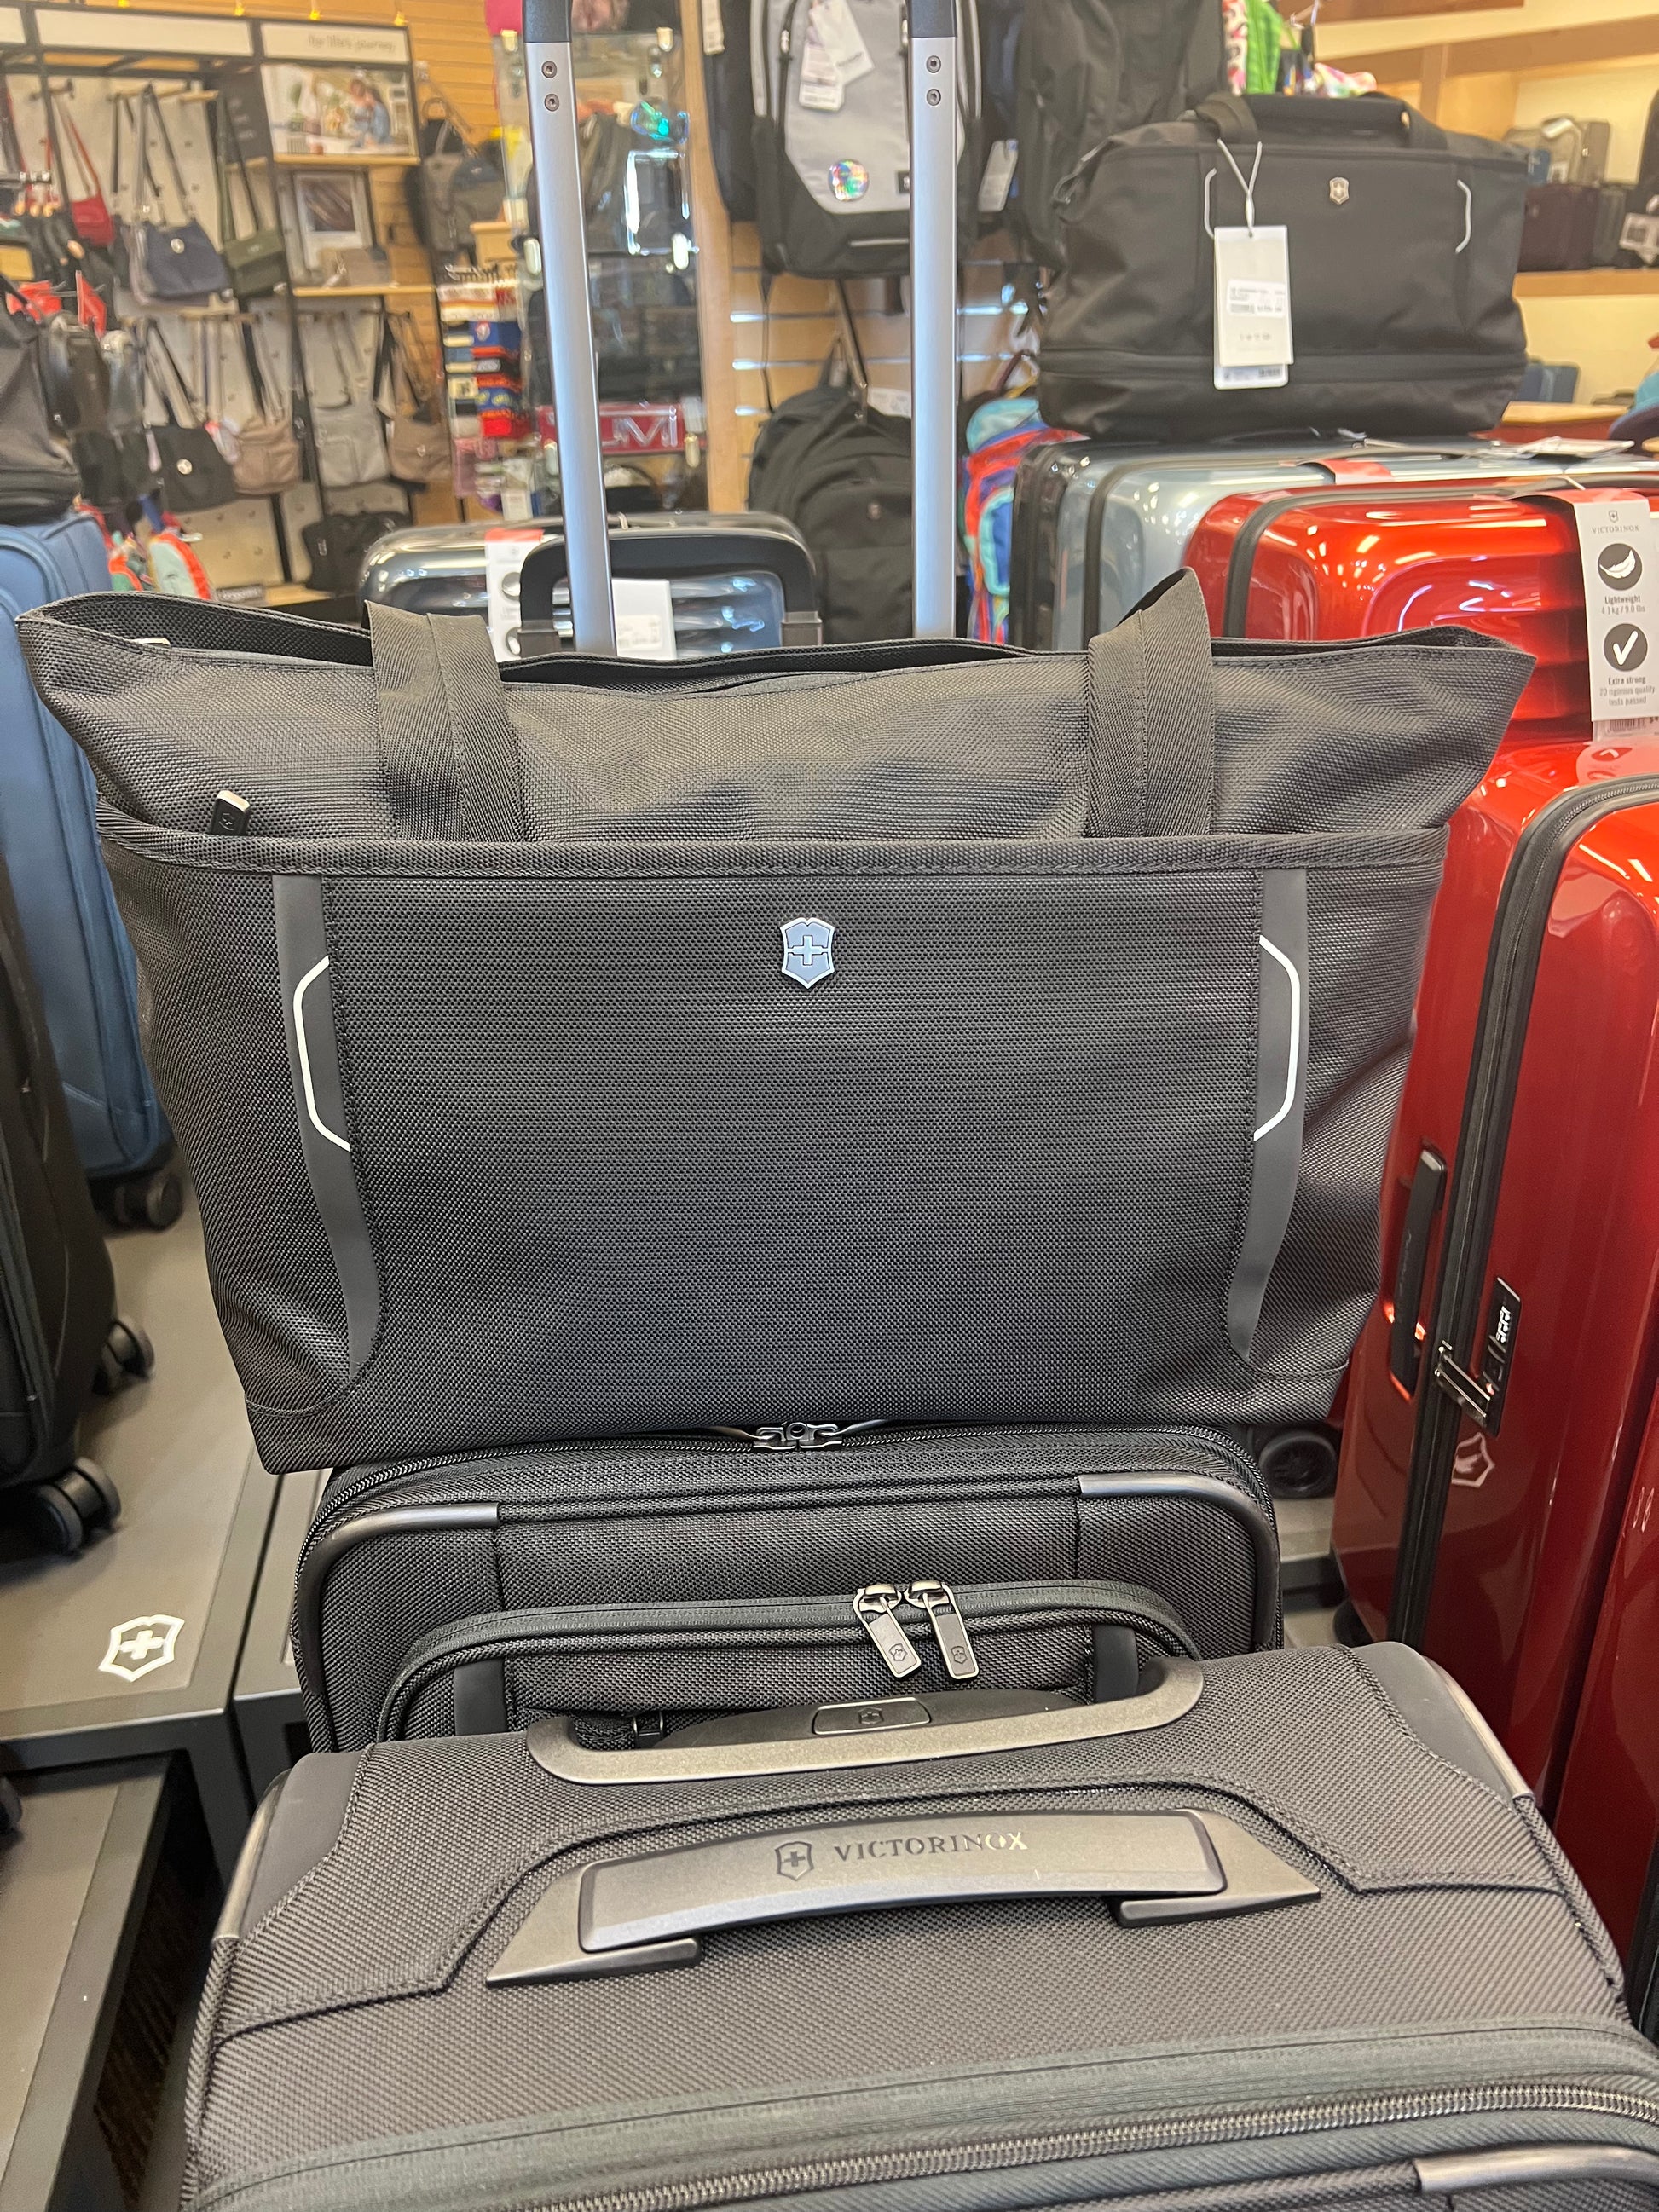 Verzwakken gezond verstand dubbellaag Victorinox Werks Traveler 6.0 Shopping Tote – Lieber's Luggage